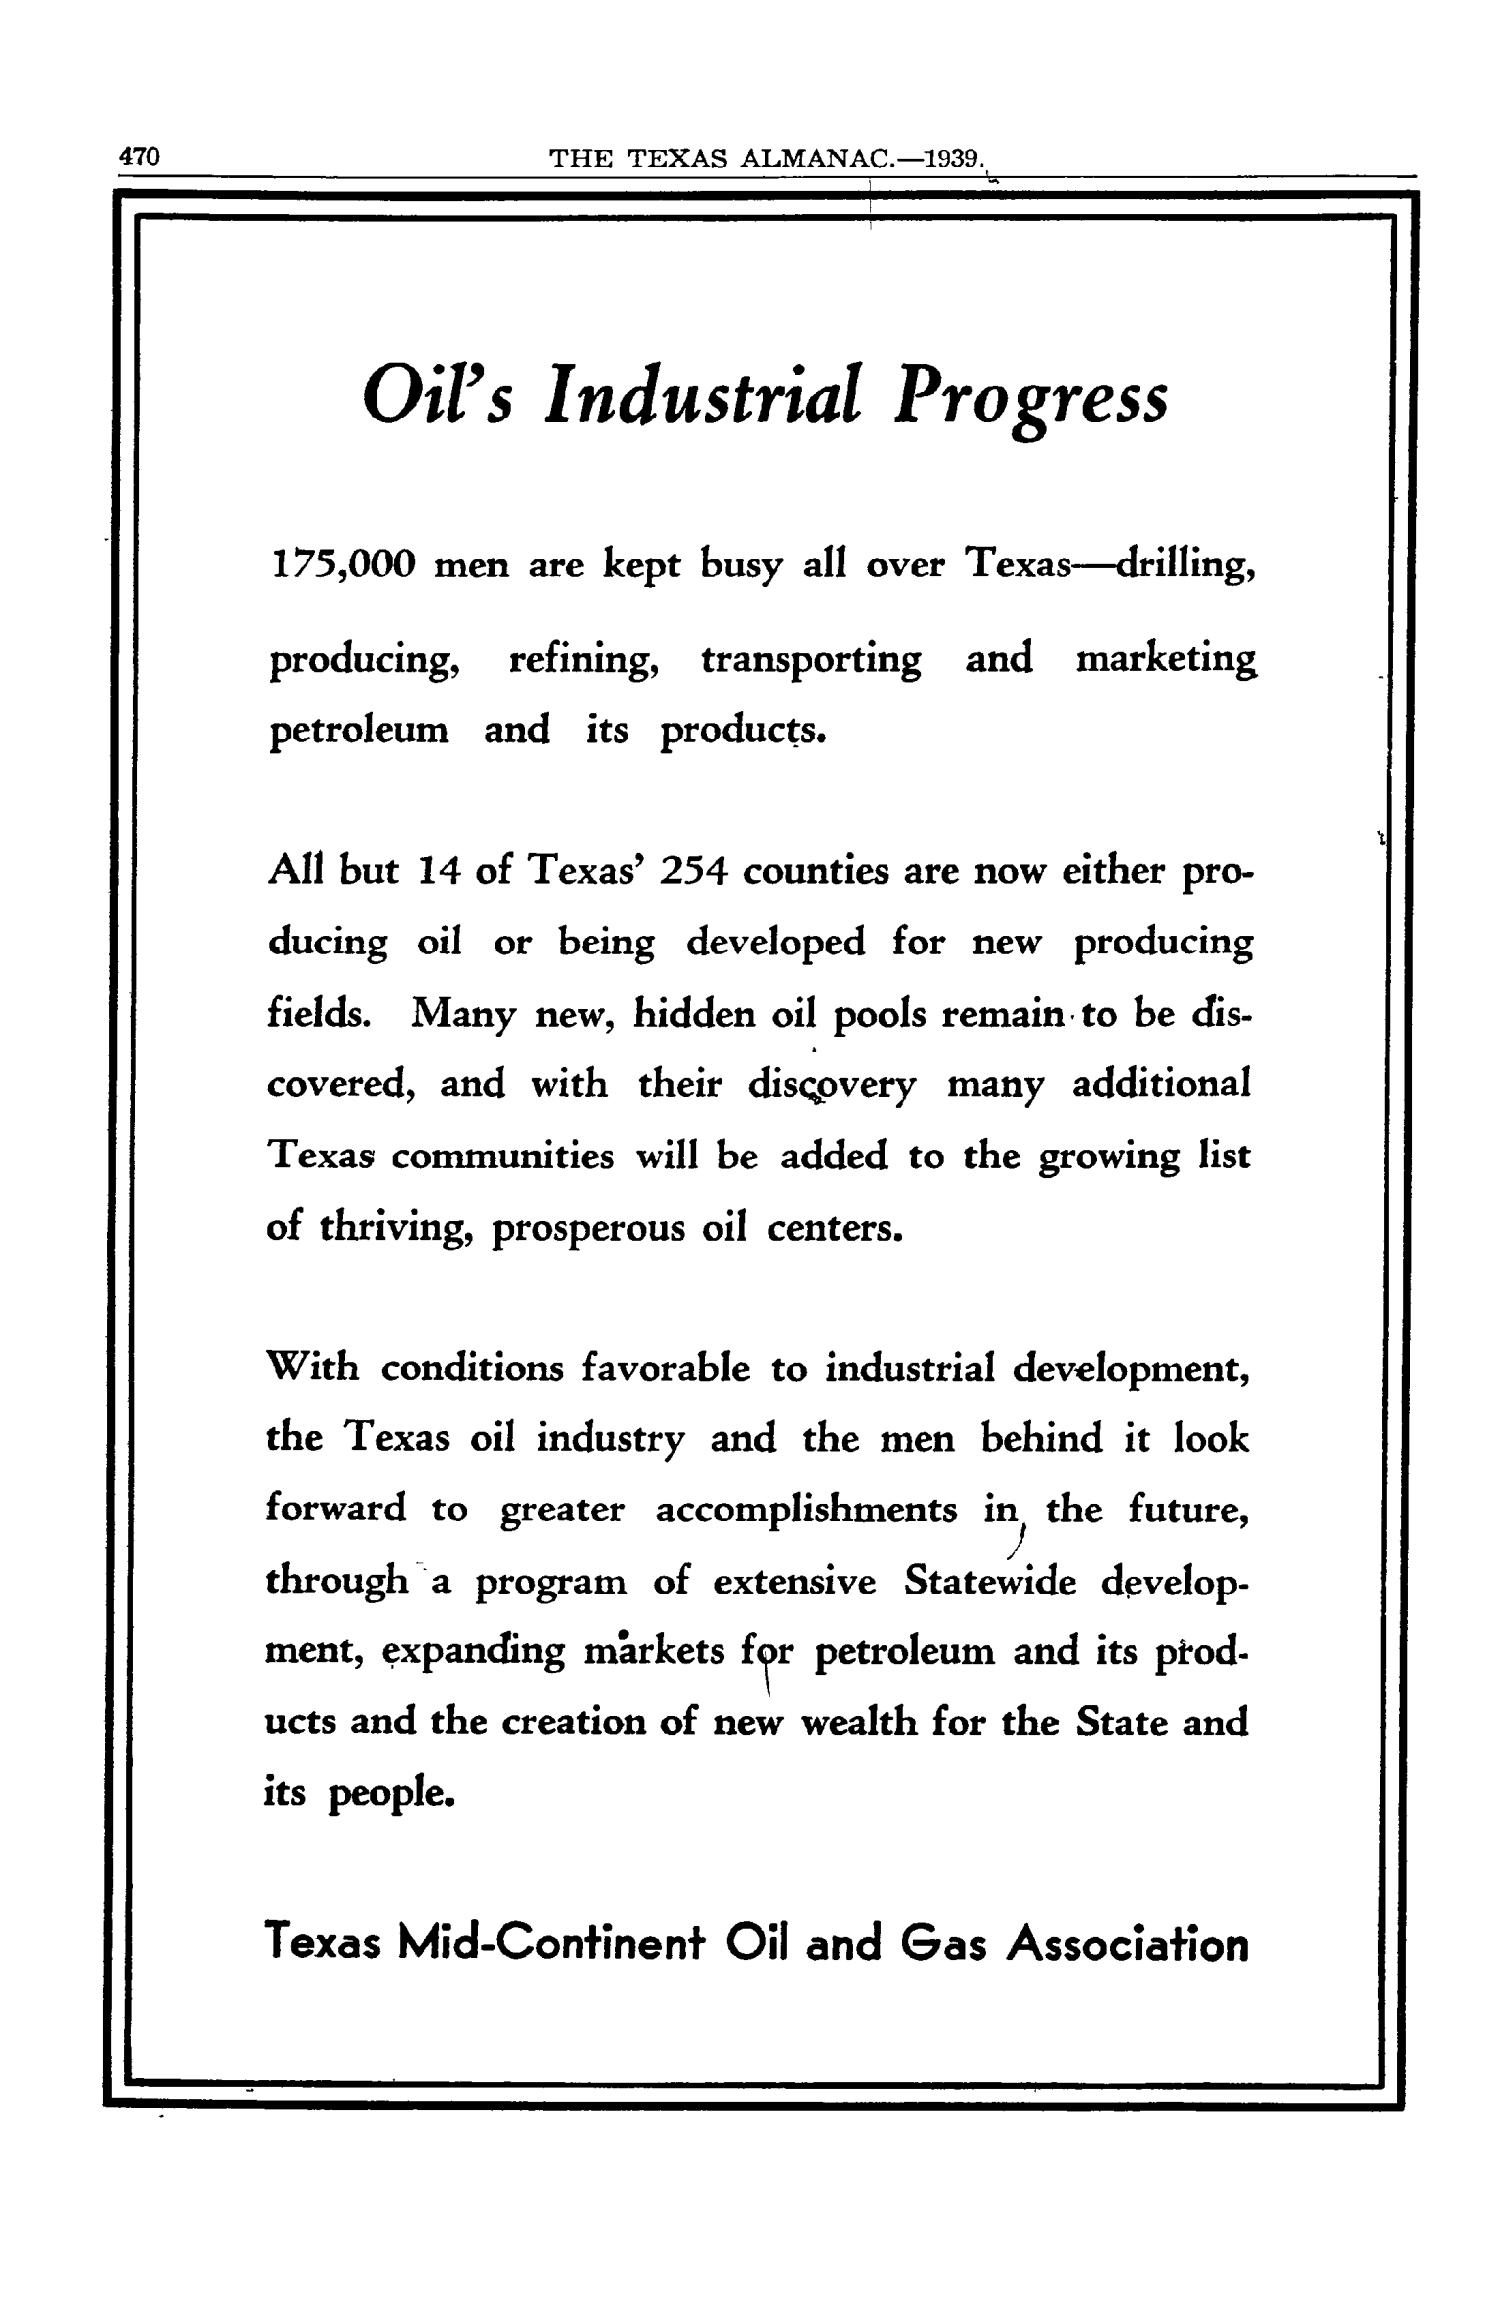 Texas Almanac, 1939-1940
                                                
                                                    470
                                                